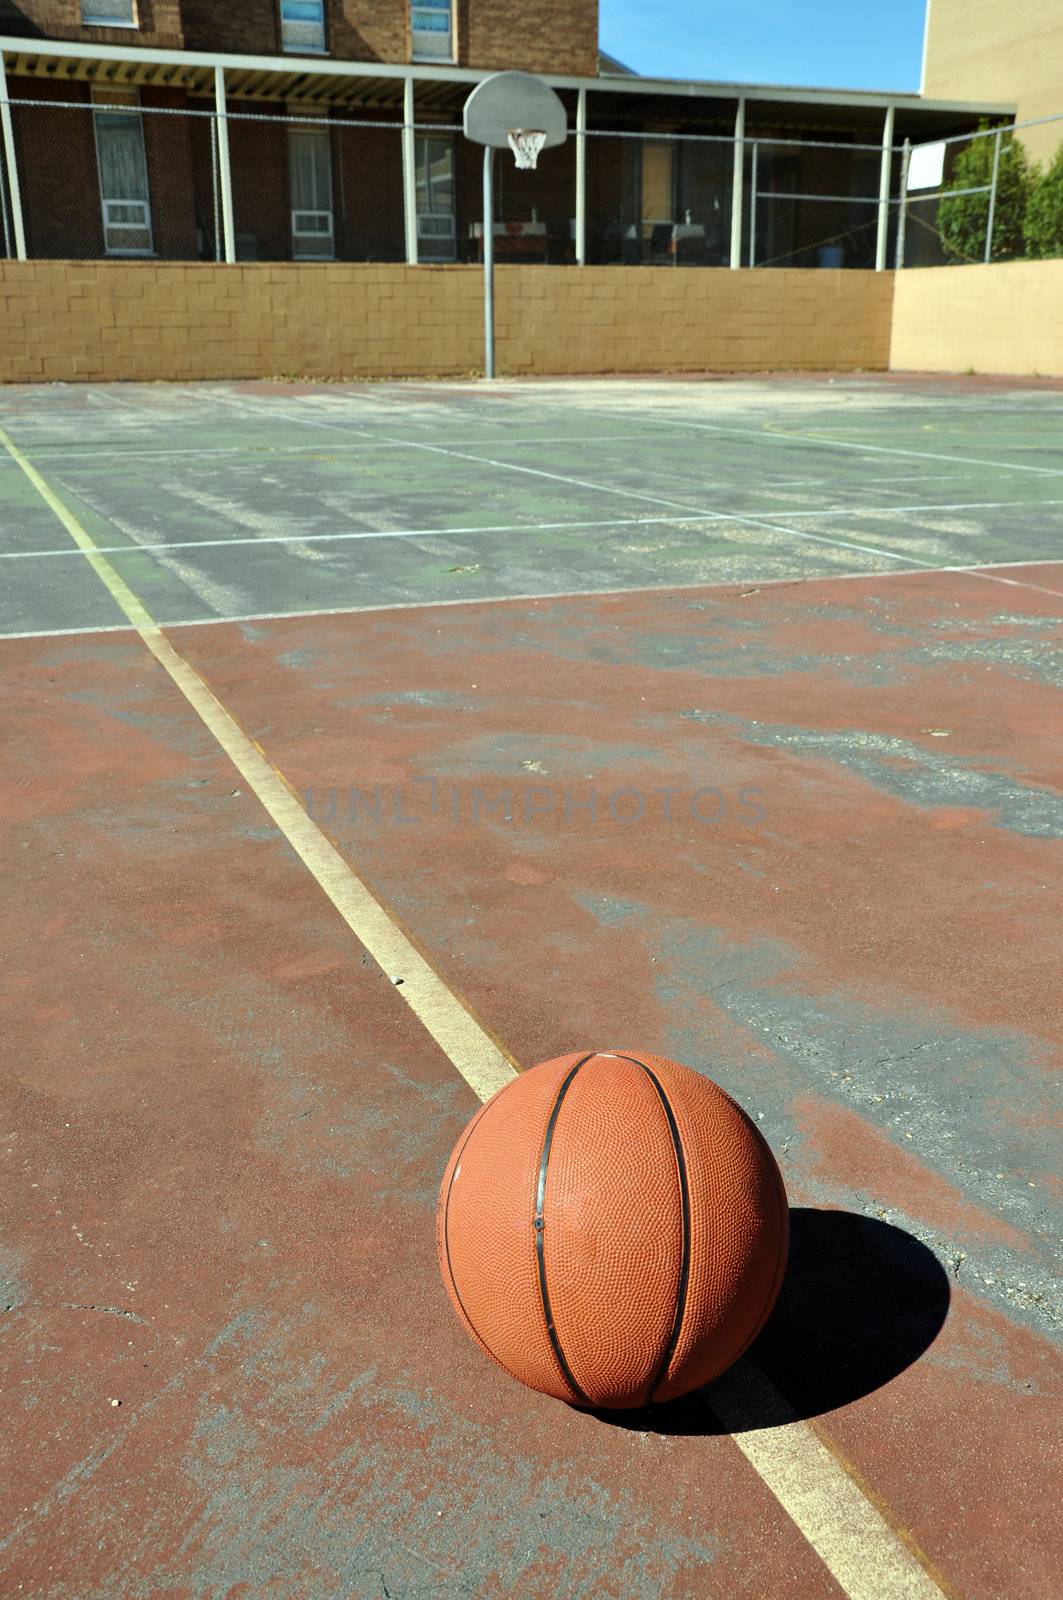 Outdoor basketball court in schoolyard.